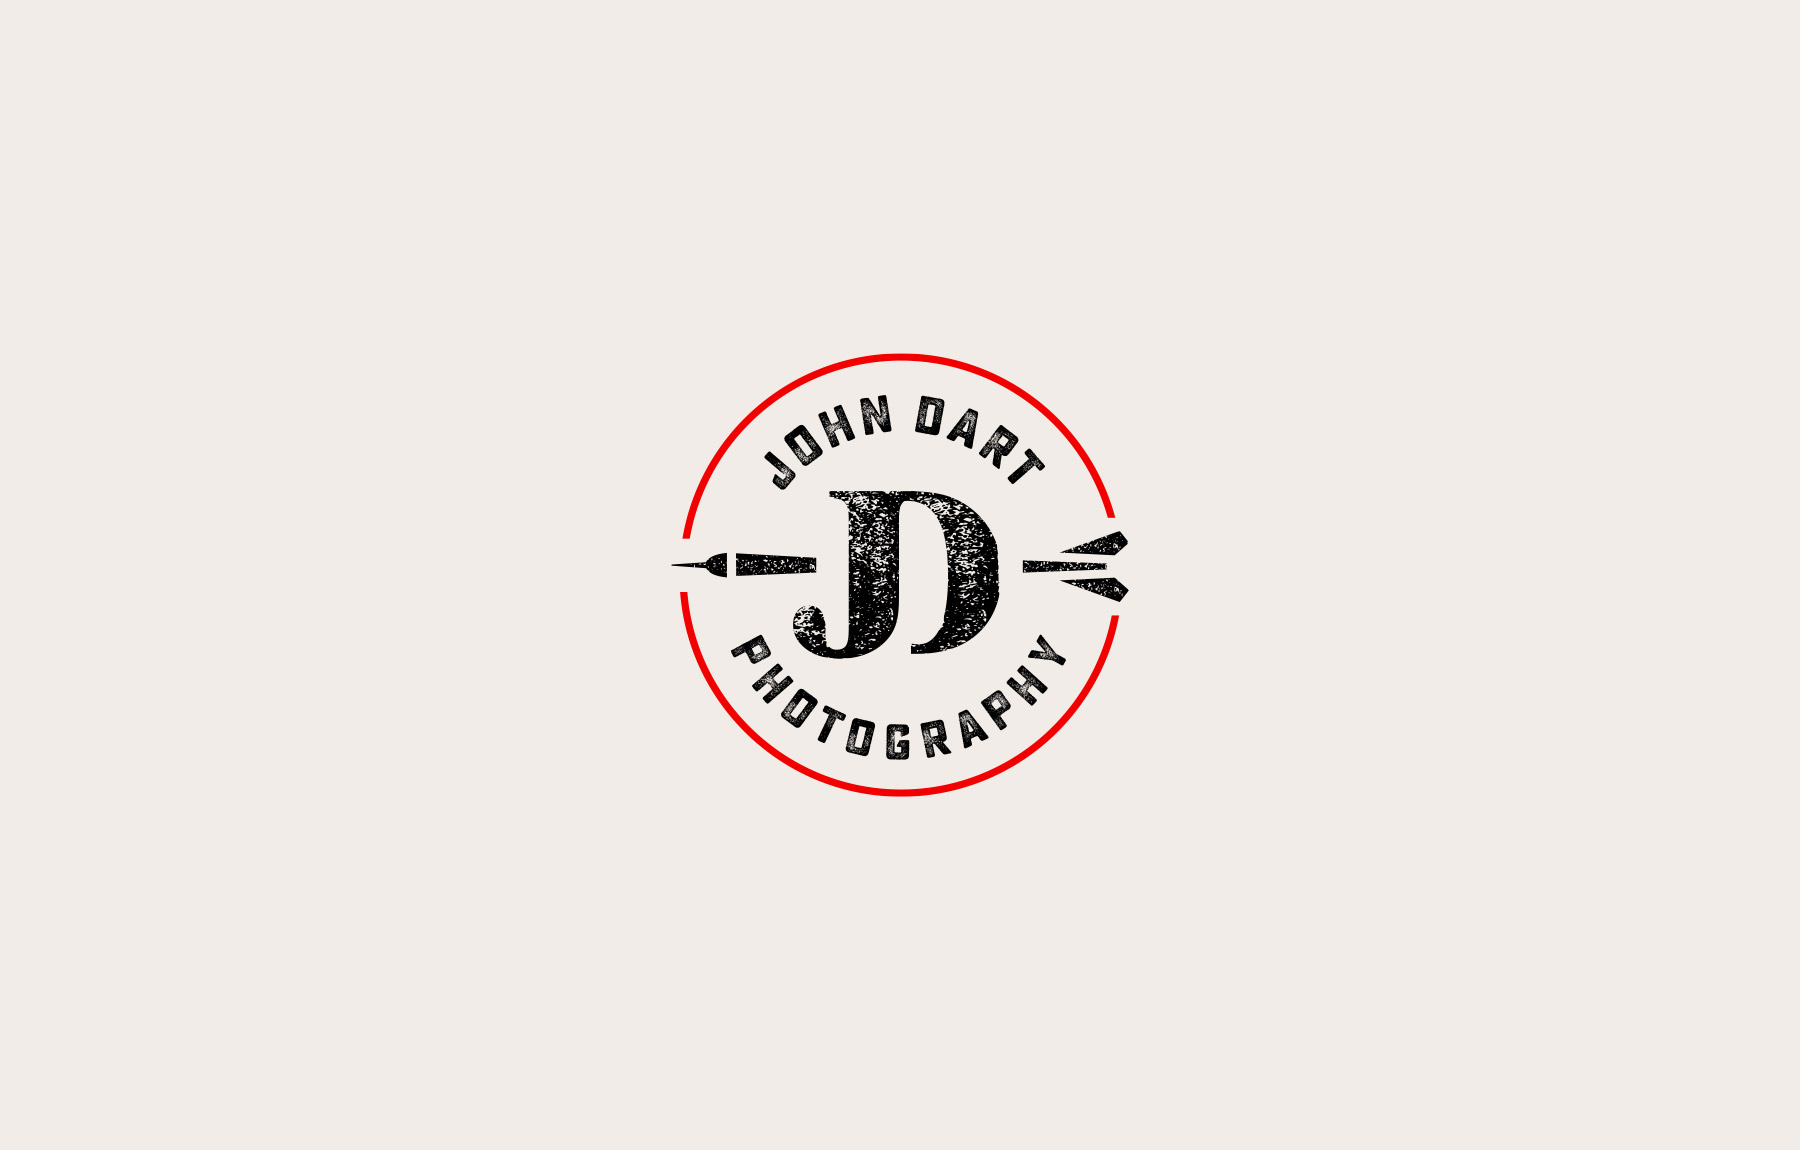 John Dart Photography company logo